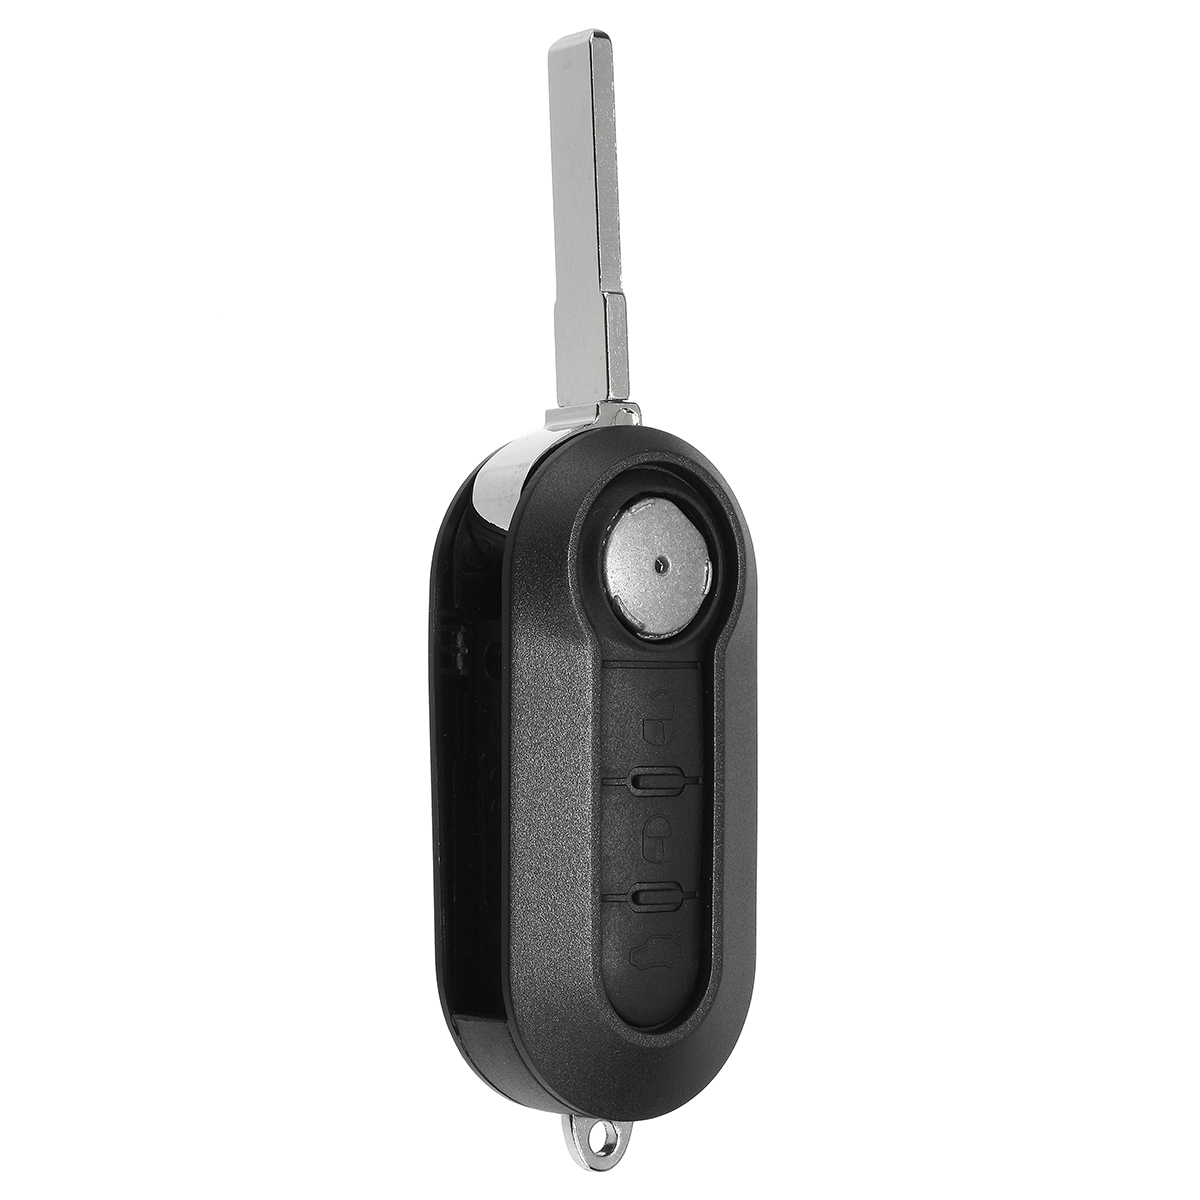 Klappschlüssel-Abdeckung mit 3 Tasten für das Auto, Hülle mit Klinge und Batterie für Fiat 500